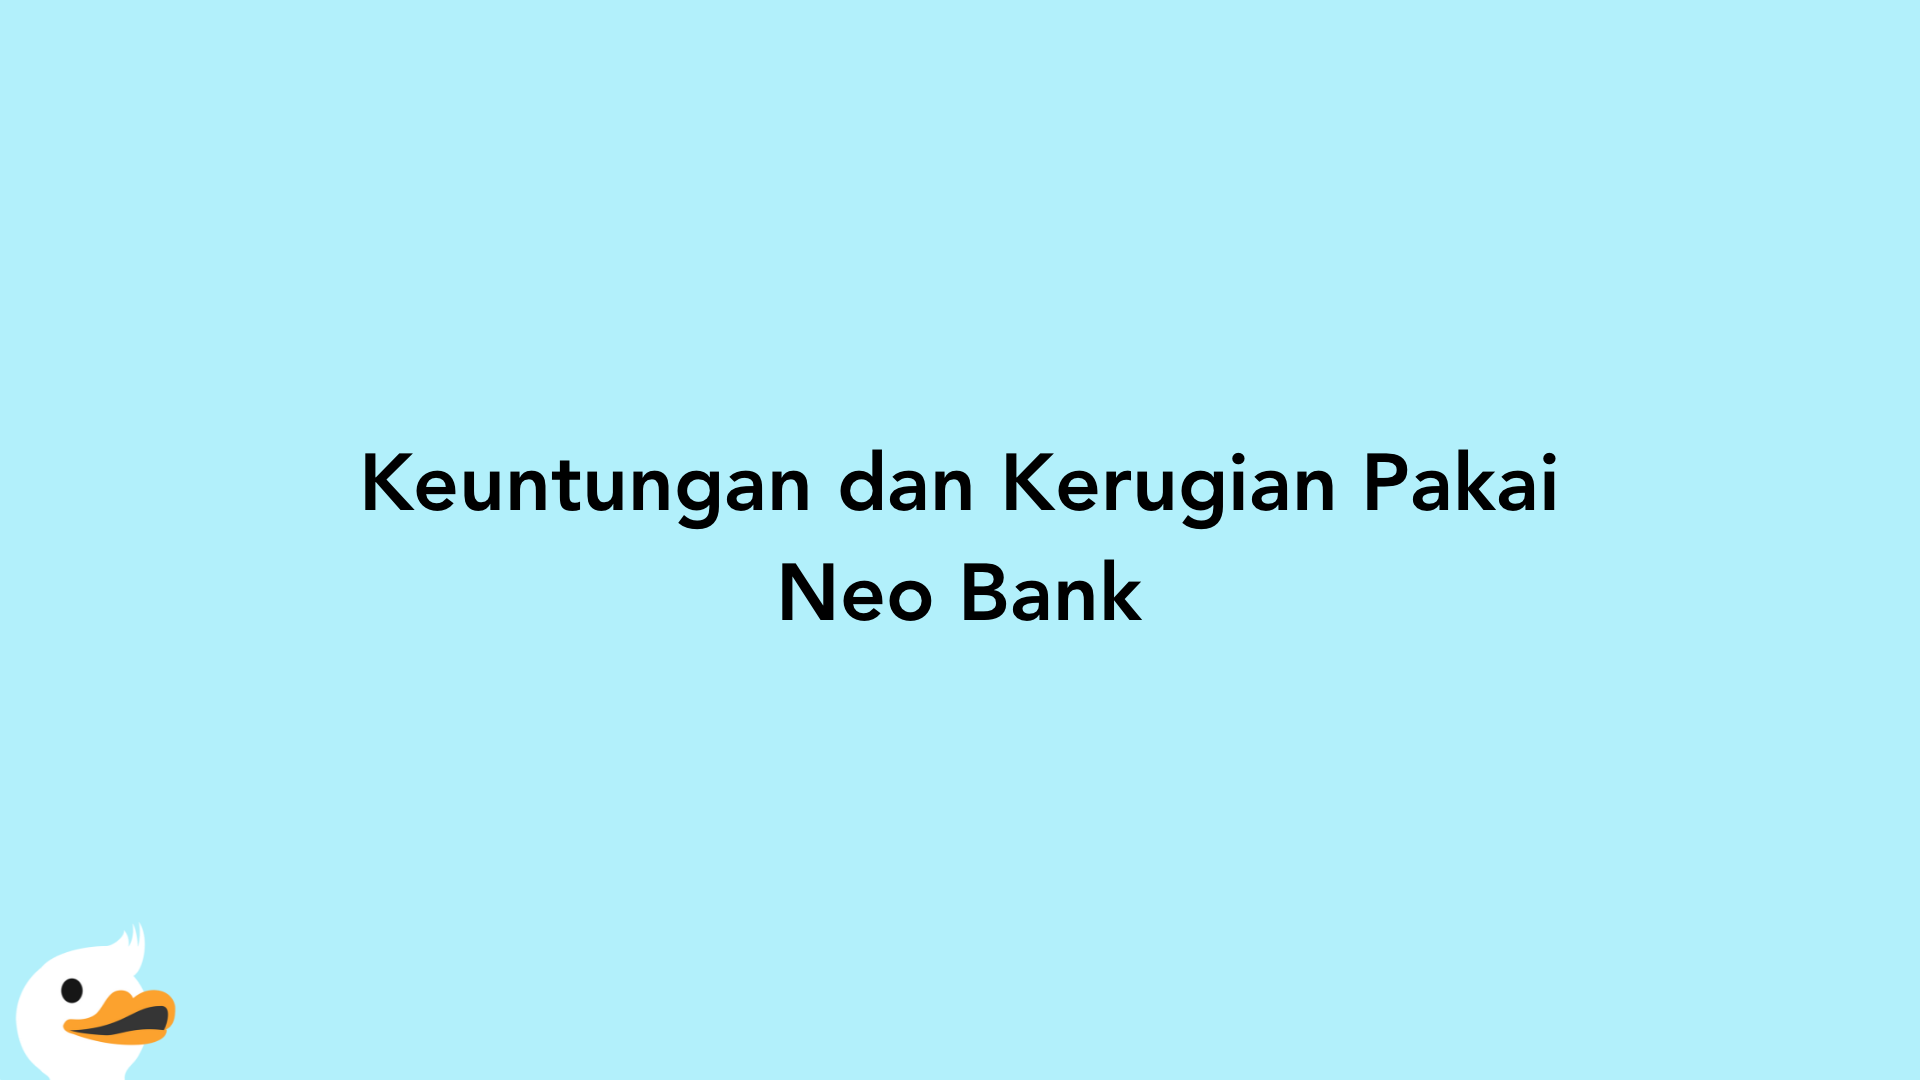 Keuntungan dan Kerugian Pakai Neo Bank